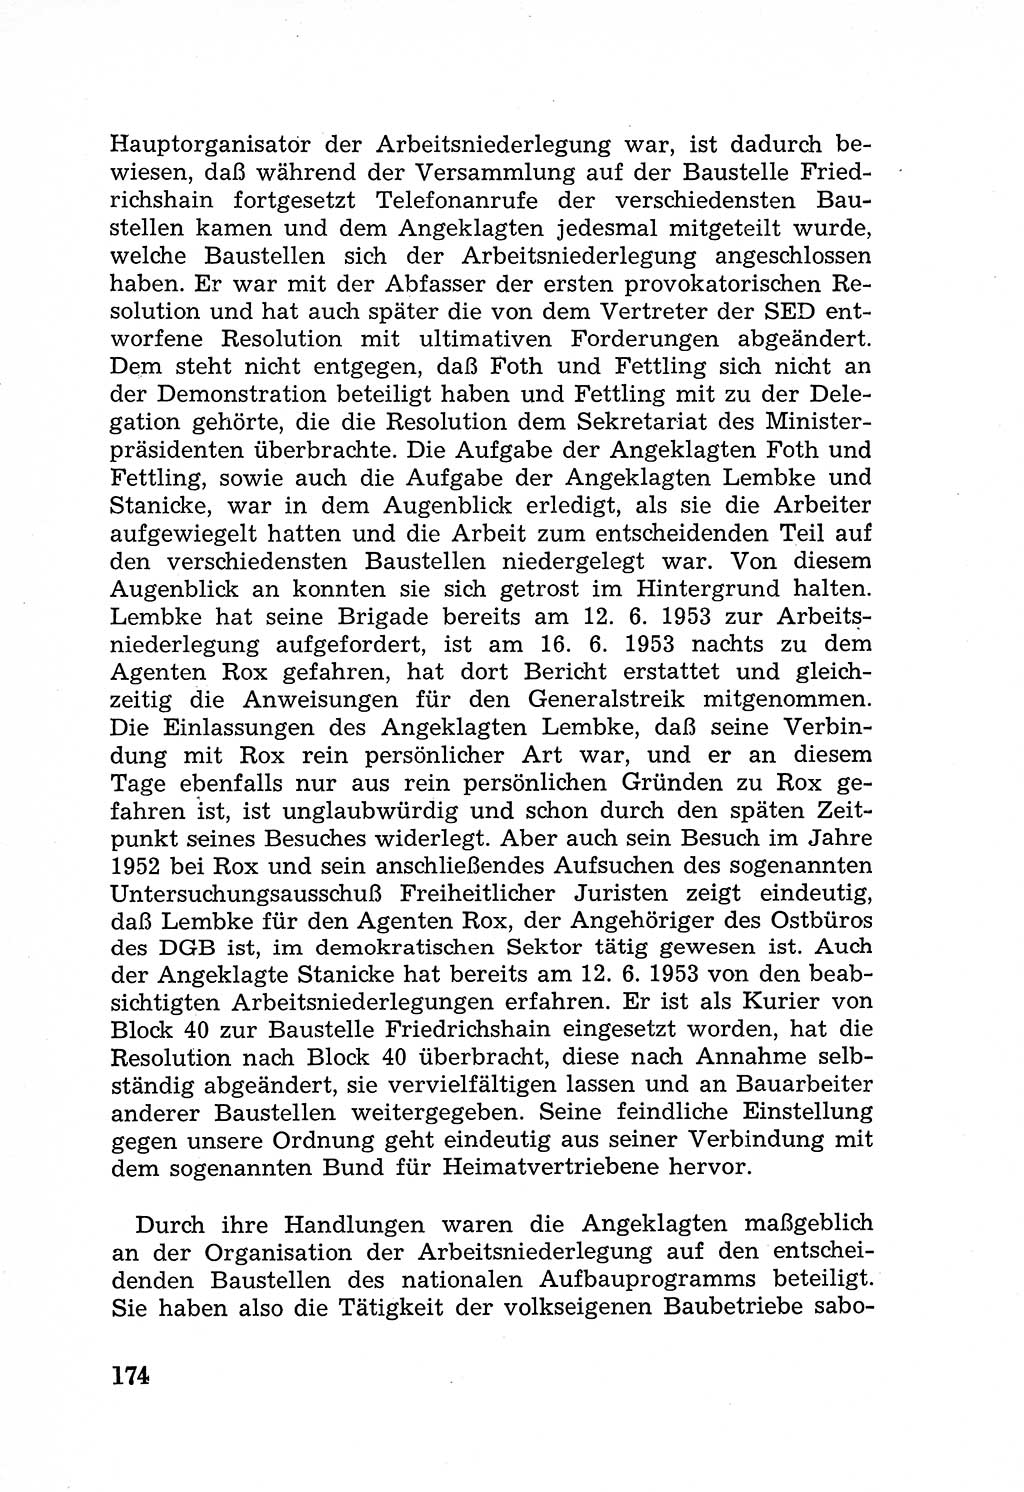 Rechtsstaat in zweierlei Hinsicht, Untersuchungsausschuß freiheitlicher Juristen (UfJ) [Bundesrepublik Deutschland (BRD)] 1956, Seite 174 (R.-St. UfJ BRD 1956, S. 174)